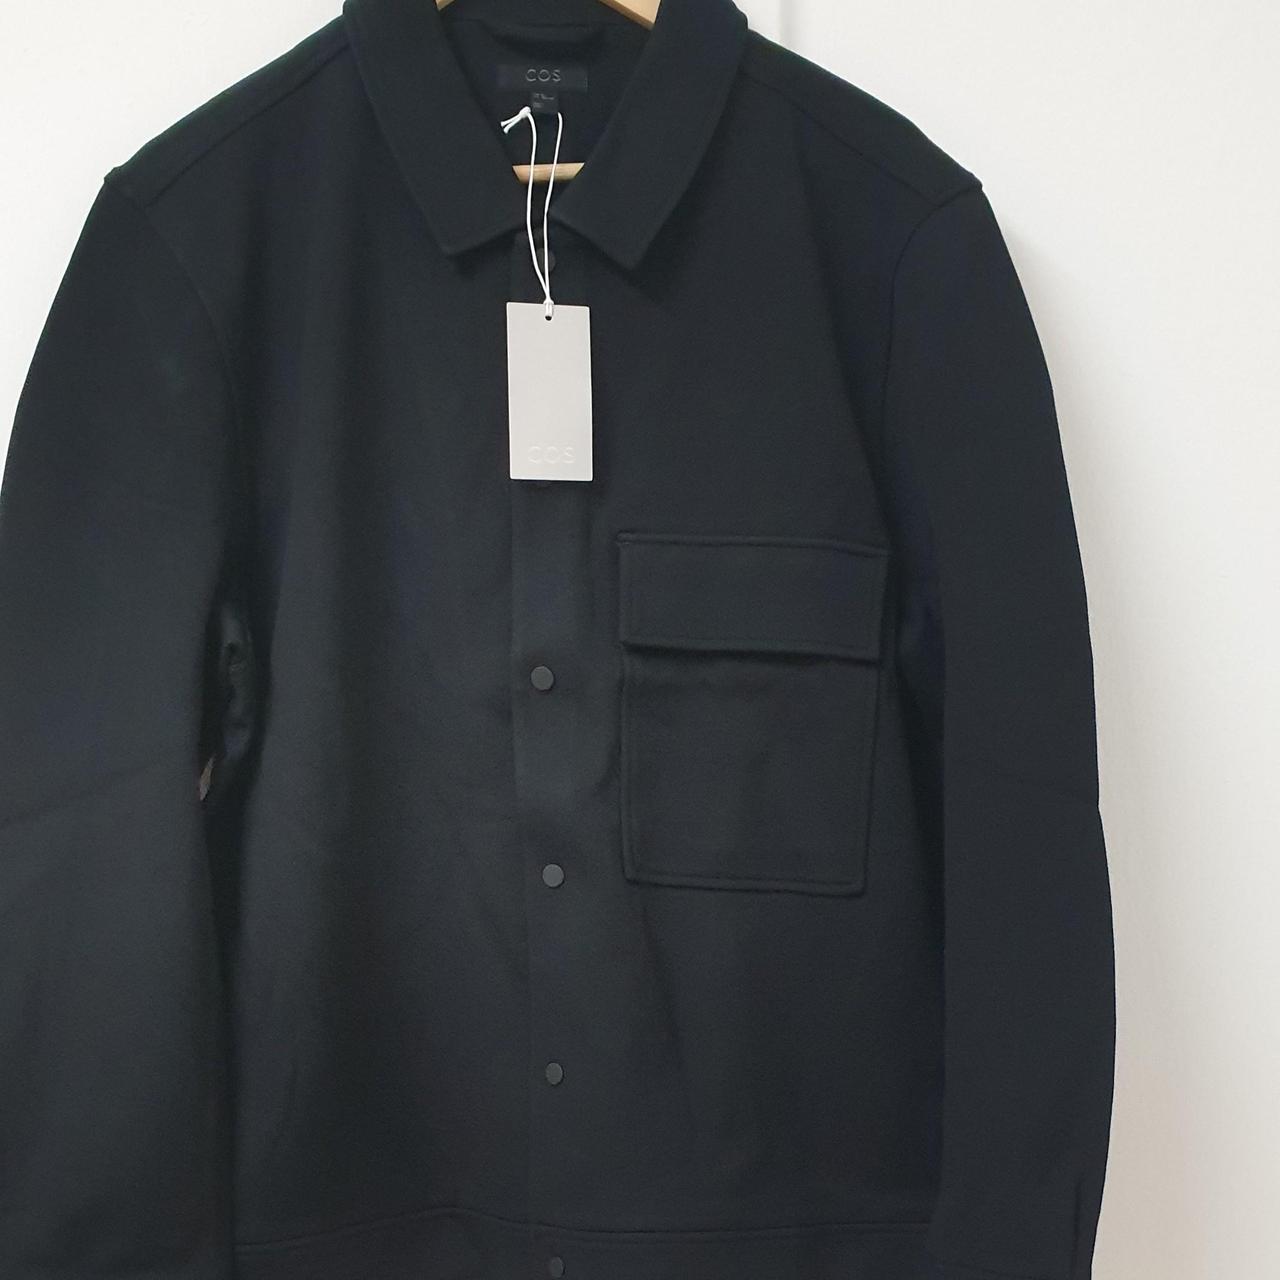 COS Coat Black EUR XL #cos #coat #designer... - Depop